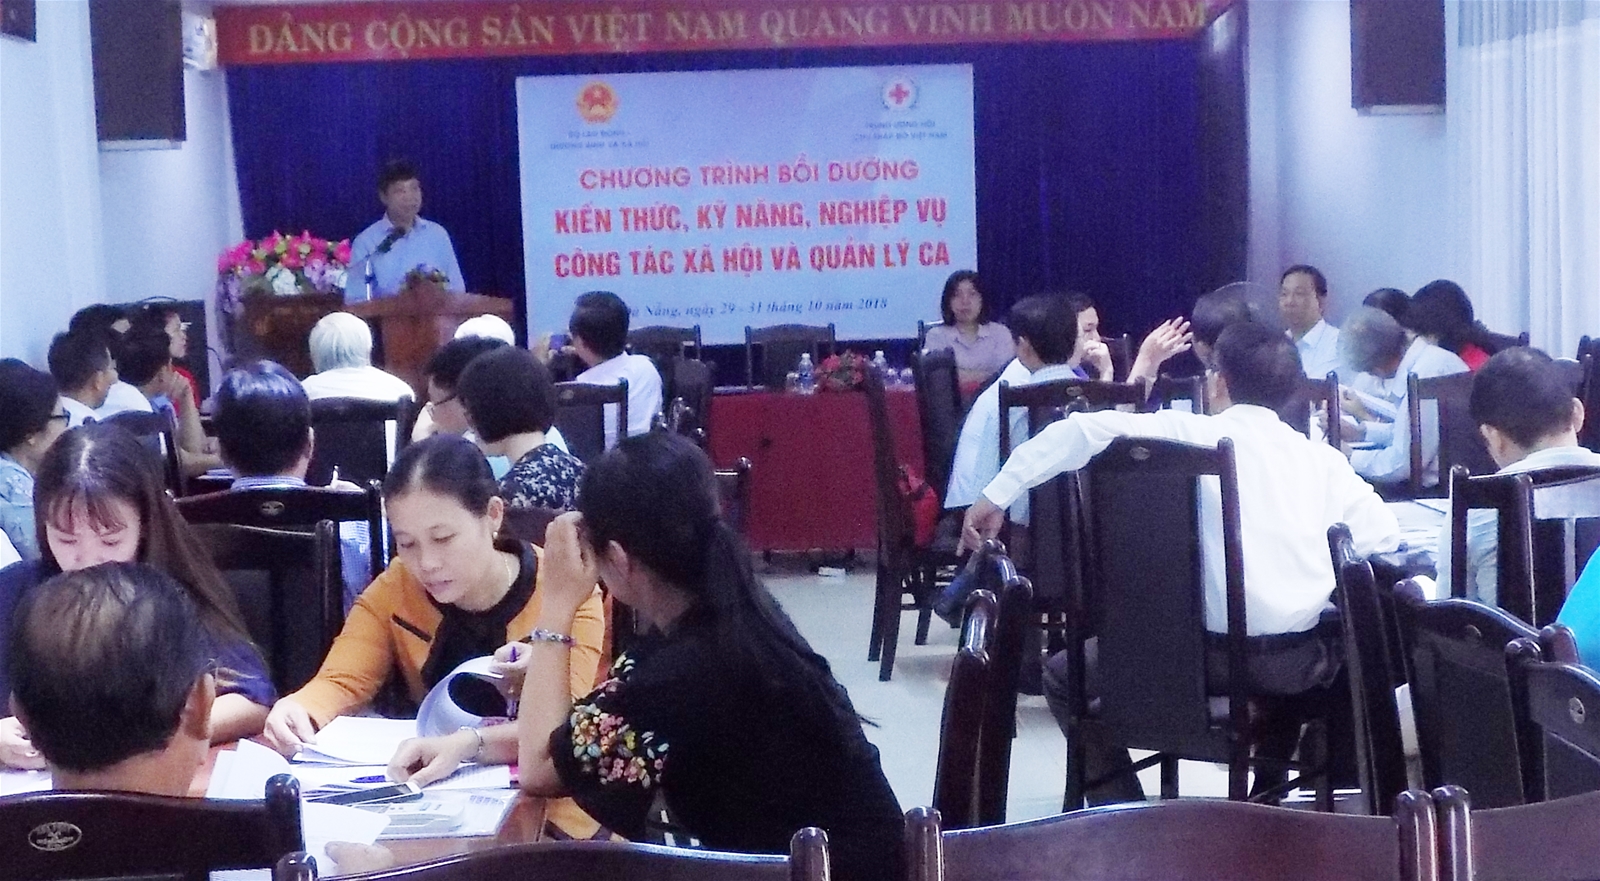 "Bồi dưỡng kiến thức, kỹ năng nghiệp vụ công tác xã hội và quản lý CA cho cán bộ Chữ thập đỏ các cấp" tại Đã Nẵng